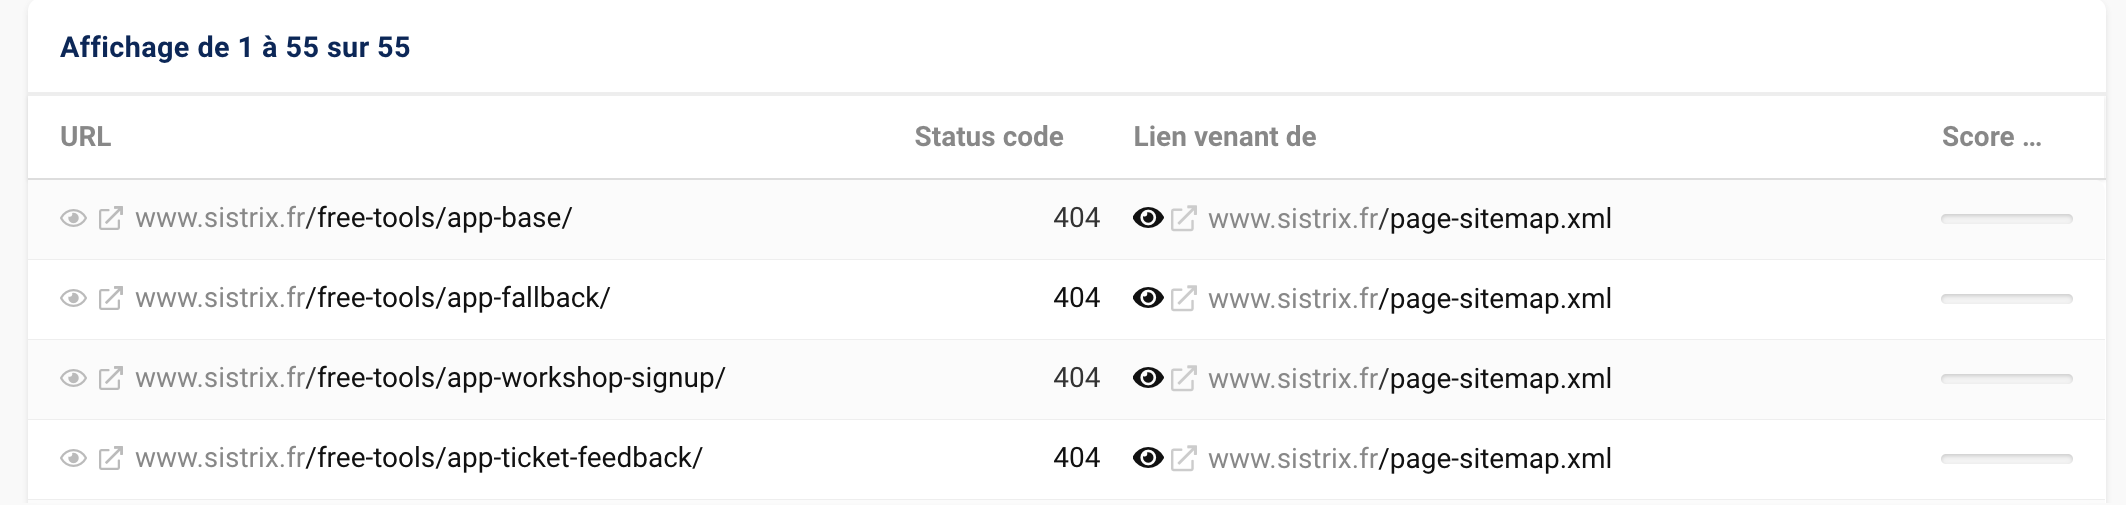 Liste des pages non trouvées identifiées comme erreurs dans le projet sistrix.fr